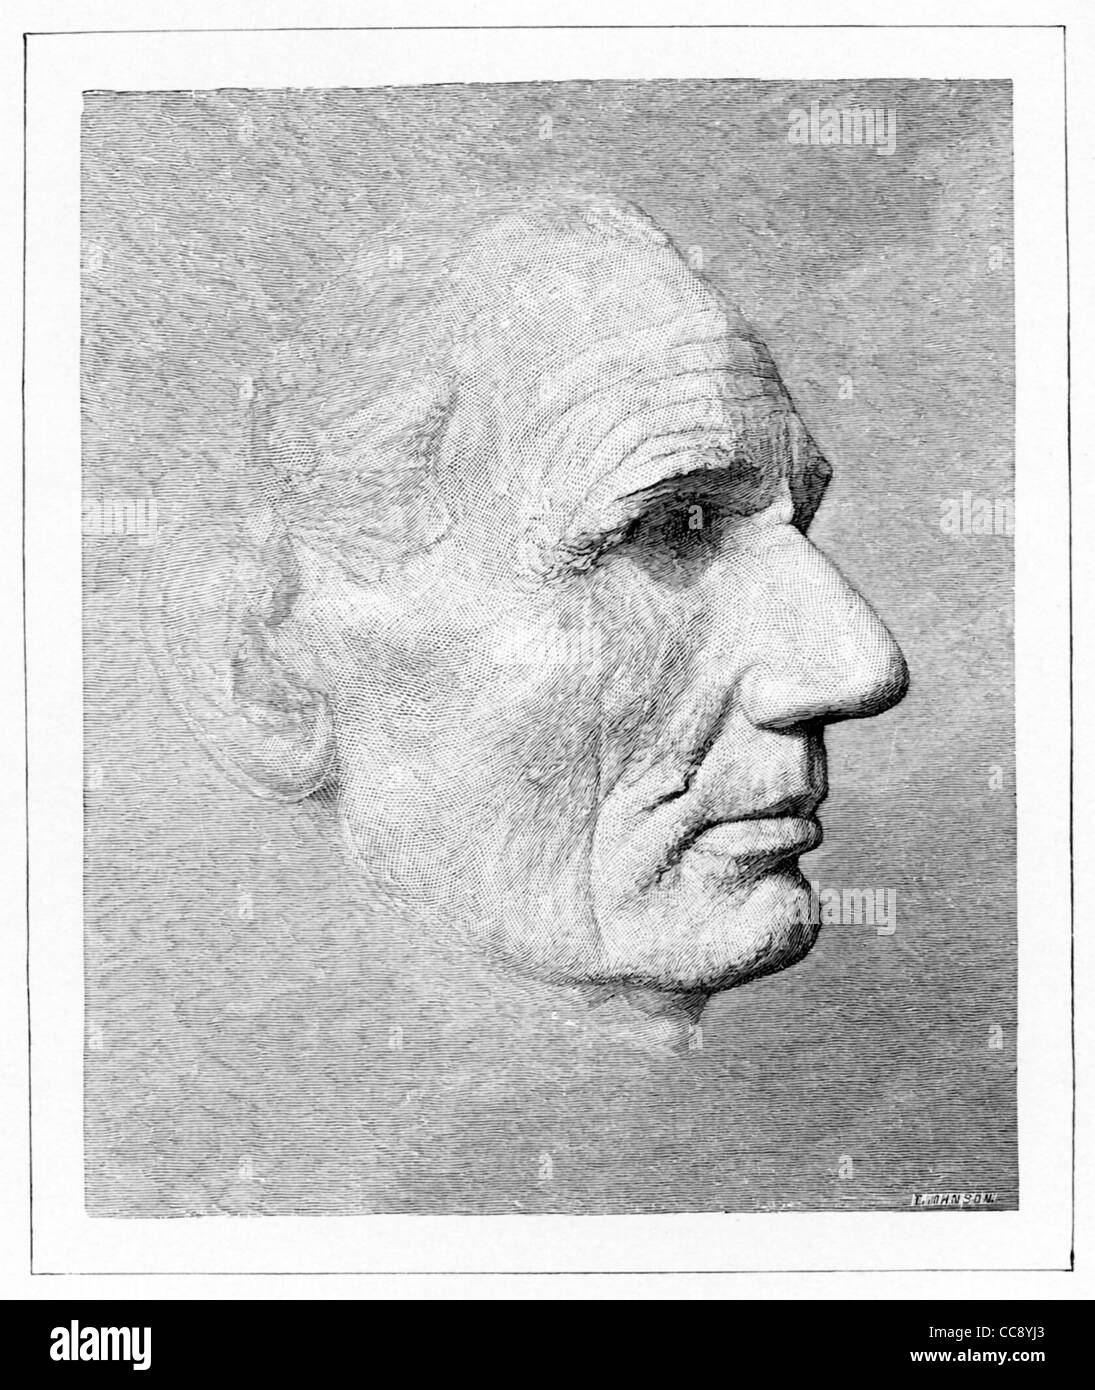 Ce masque de la vie d'Abraham Lincoln réalisé par Leonard W. Volk à Chicago, avril 1860 - peu avant la convention républicaine. Banque D'Images